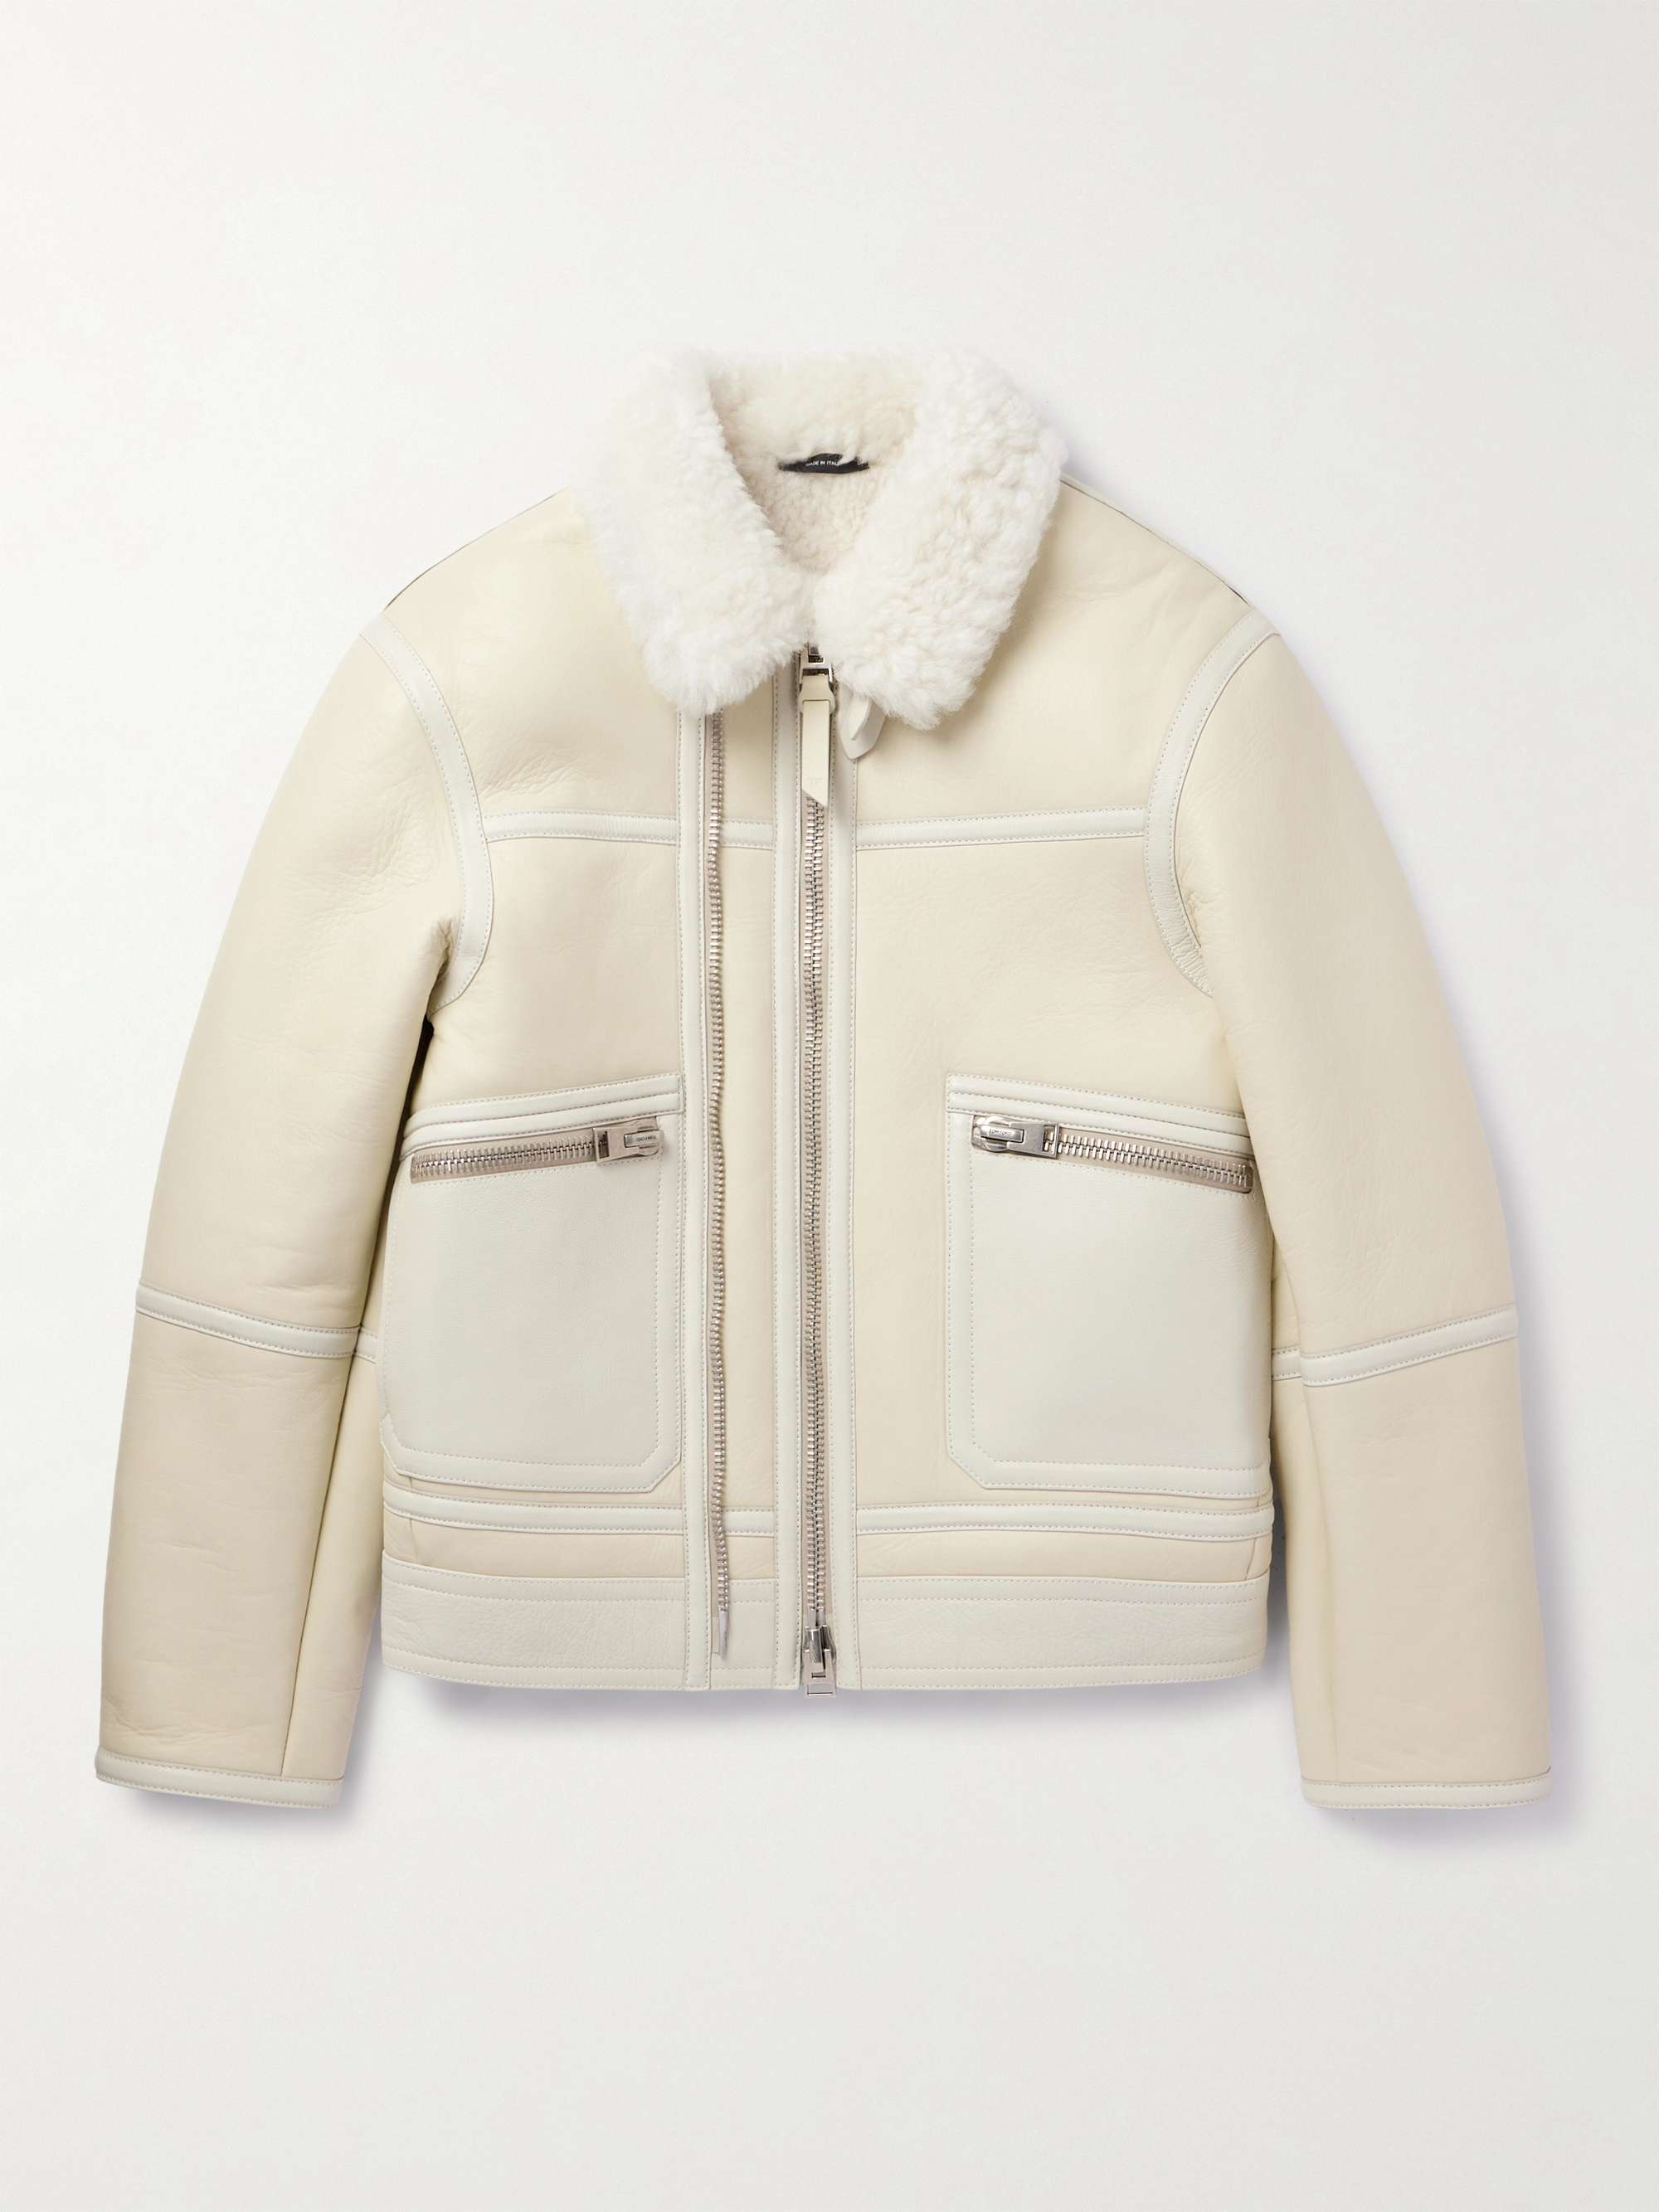 ZEGNA Leather-Trimmed Shearling Hooded Jacket for Men | MR PORTER